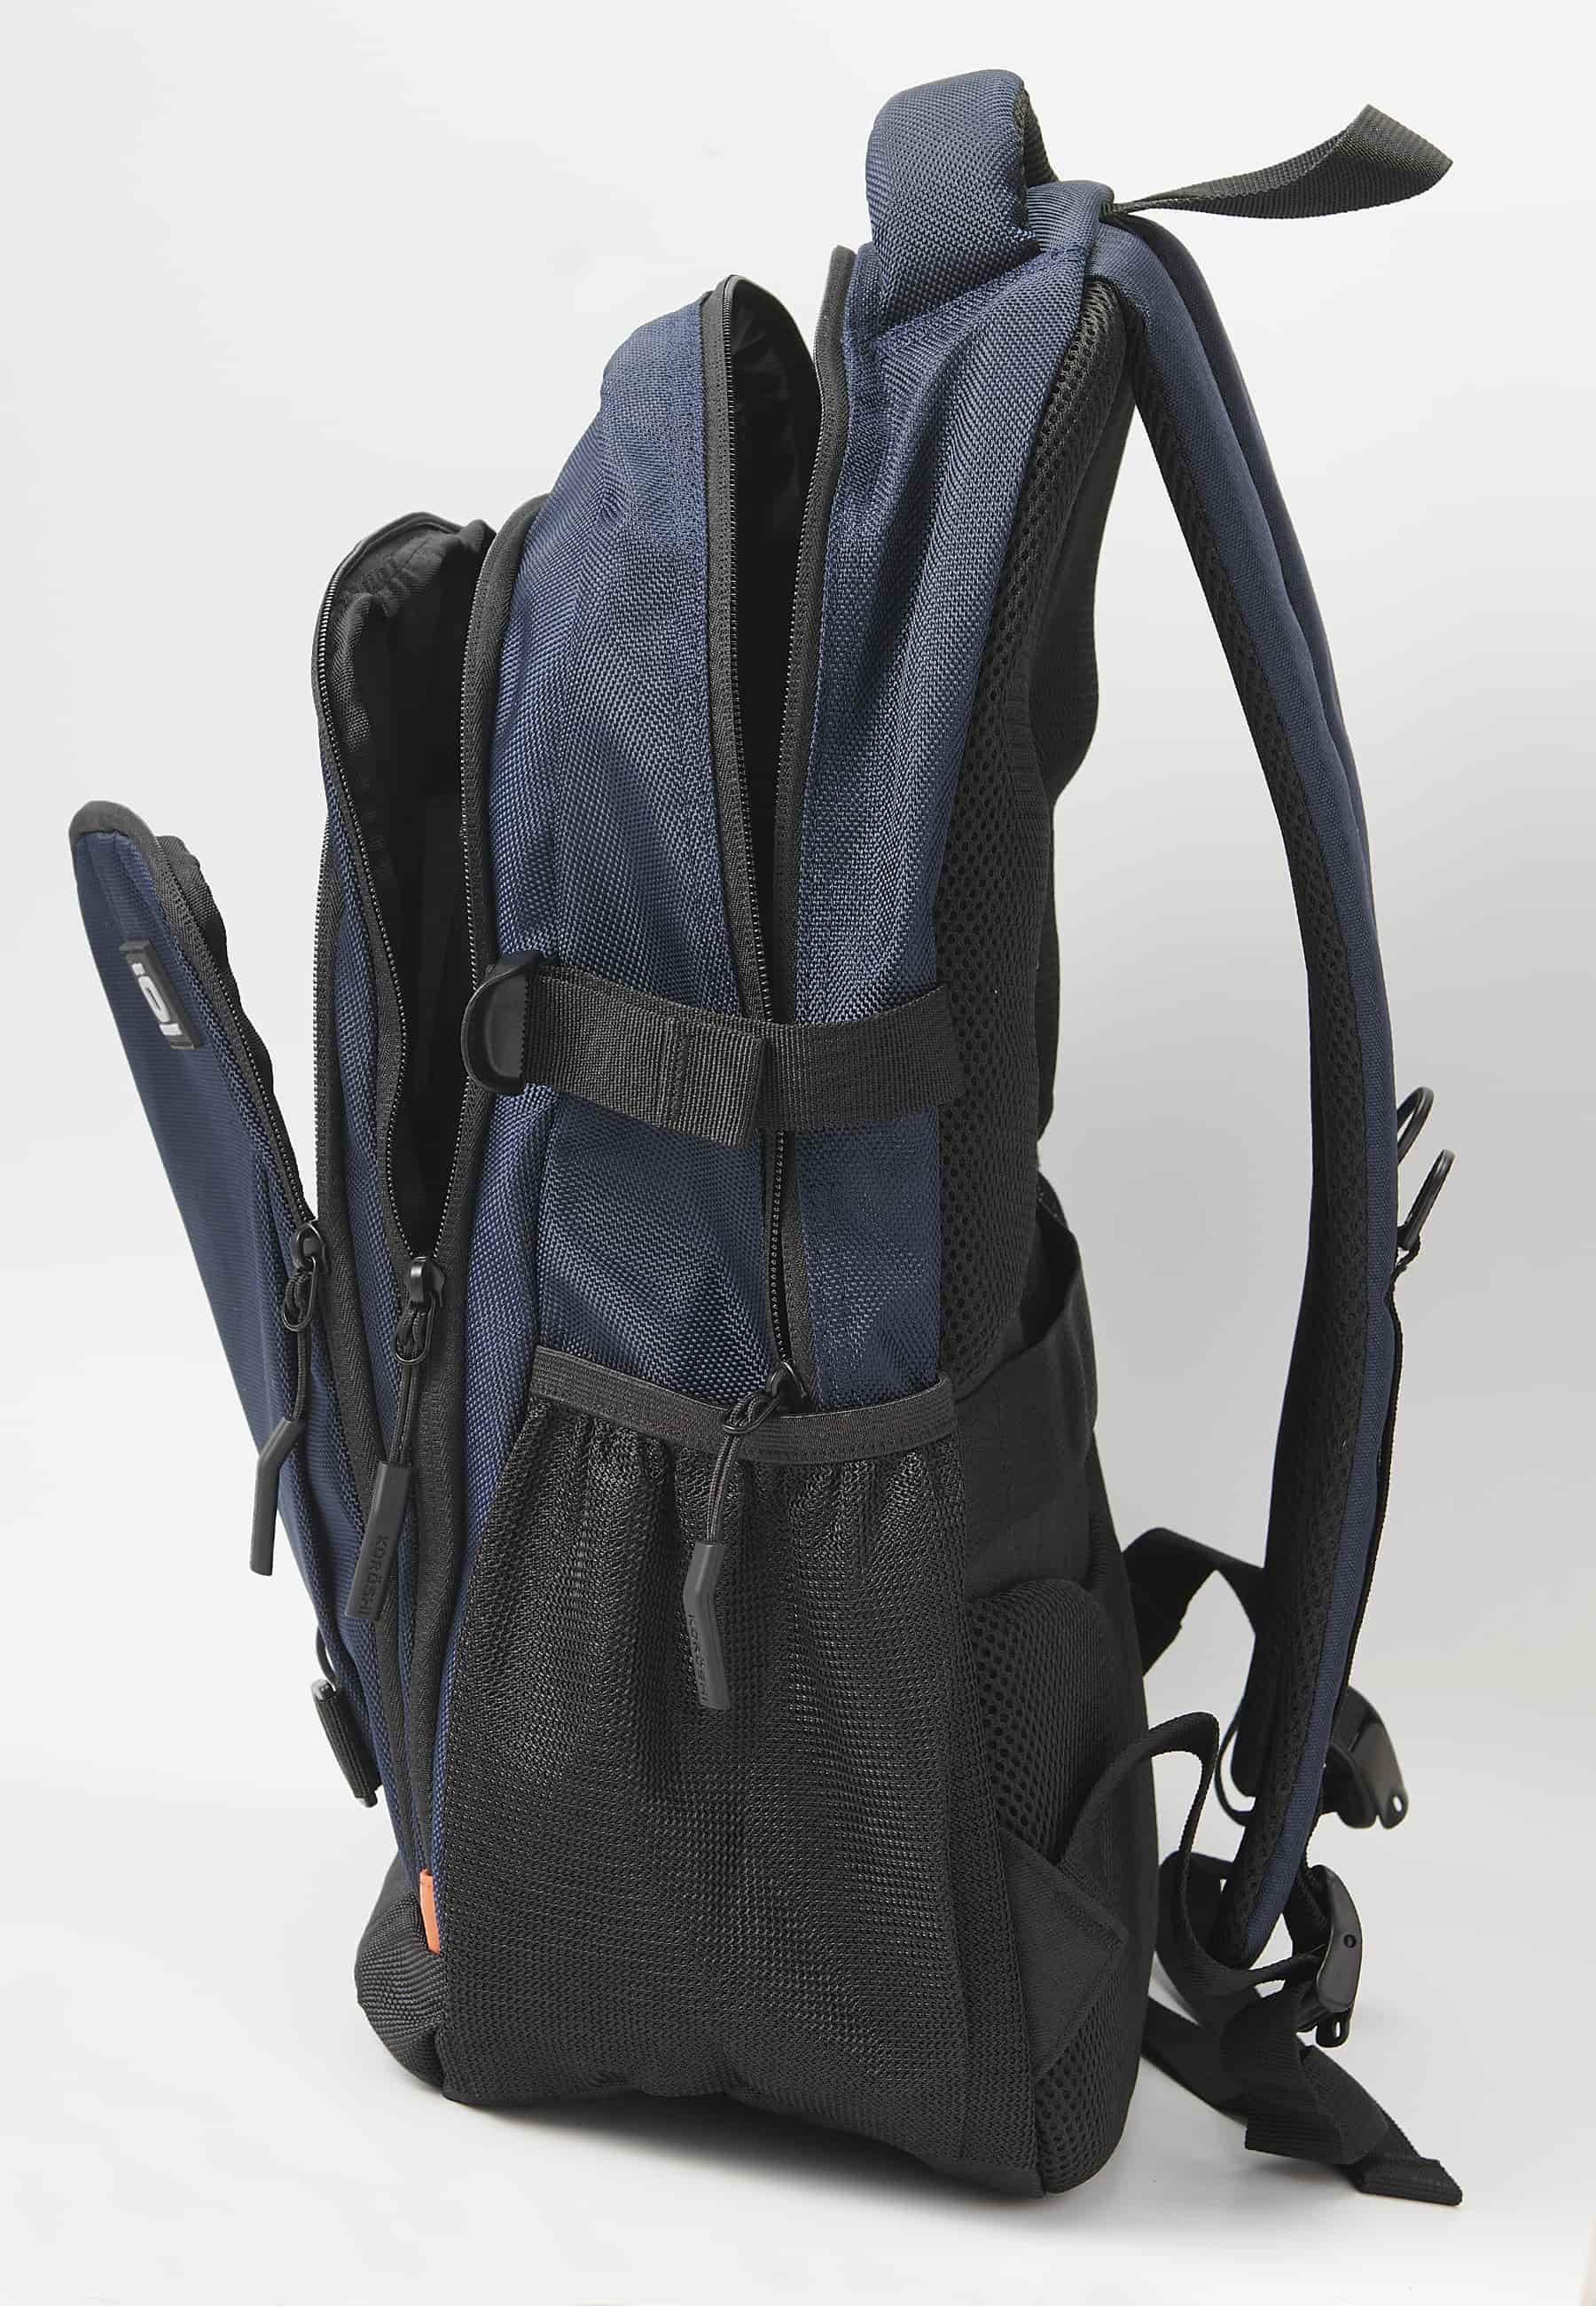 Koröshi-Rucksack mit drei Reißverschlussfächern, eines für einen Laptop, und marineblauen Innentaschen